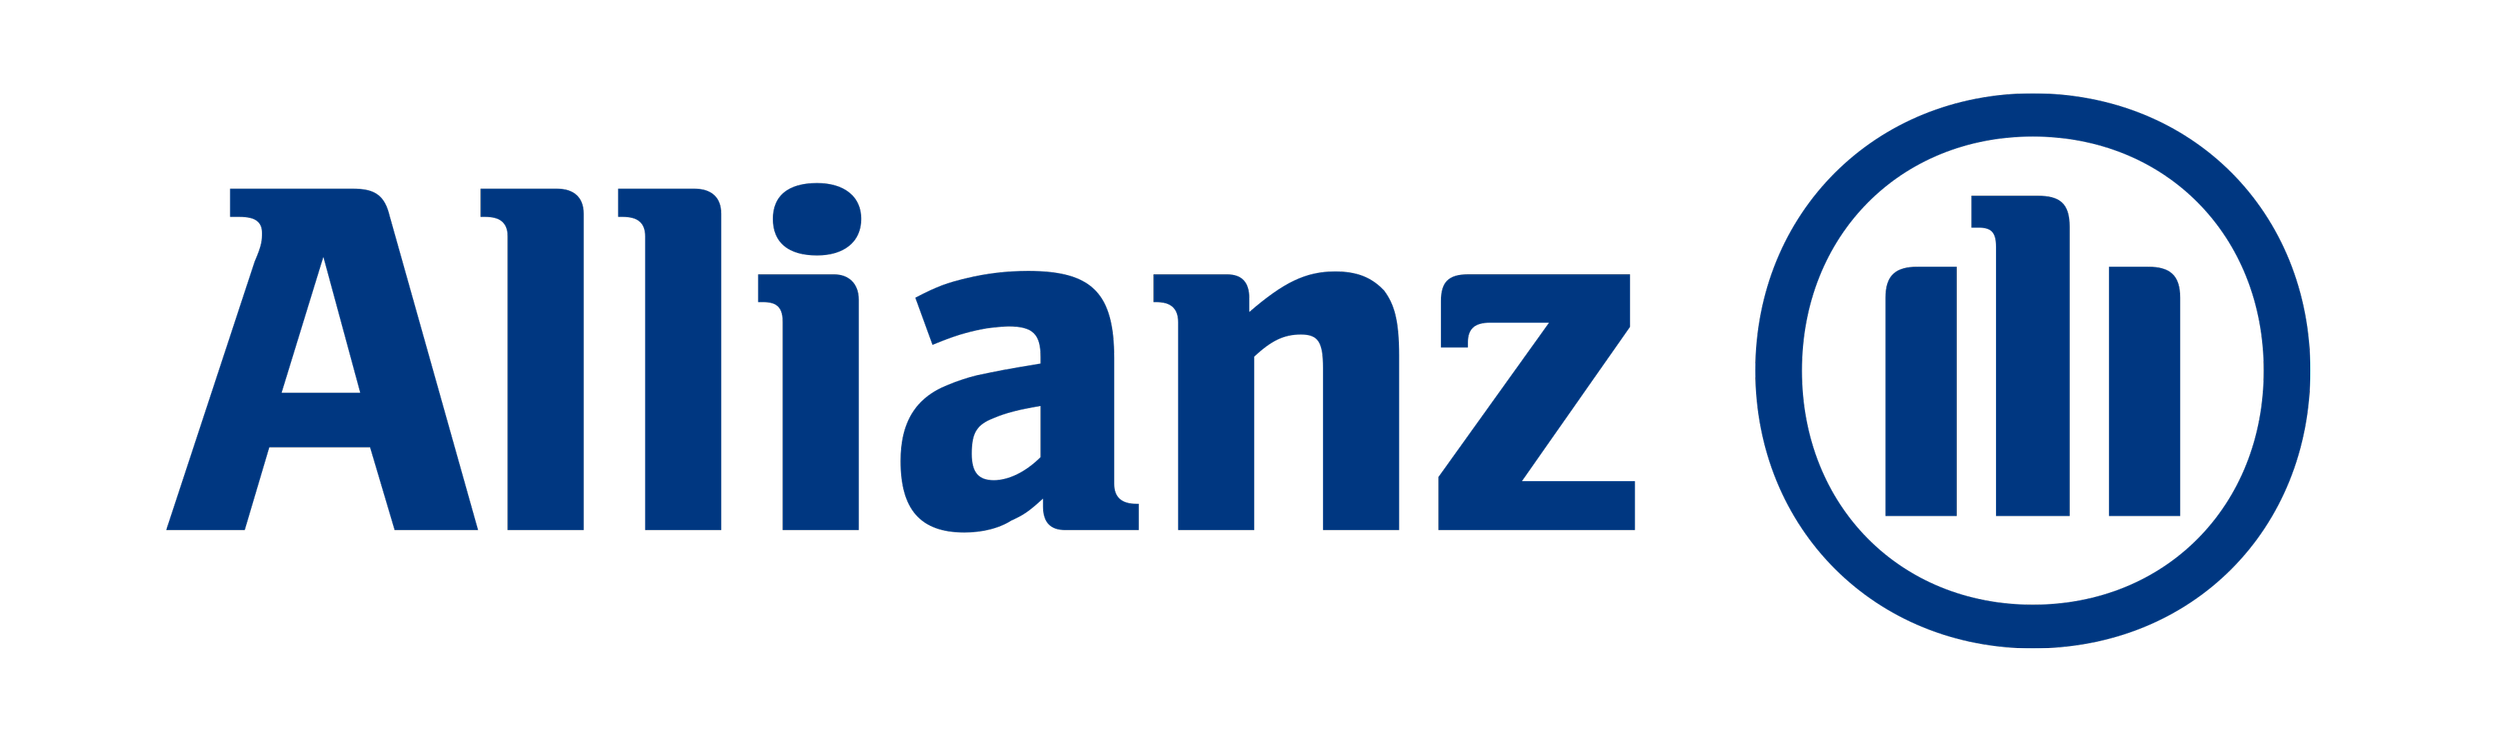 allianz-logo-2.png